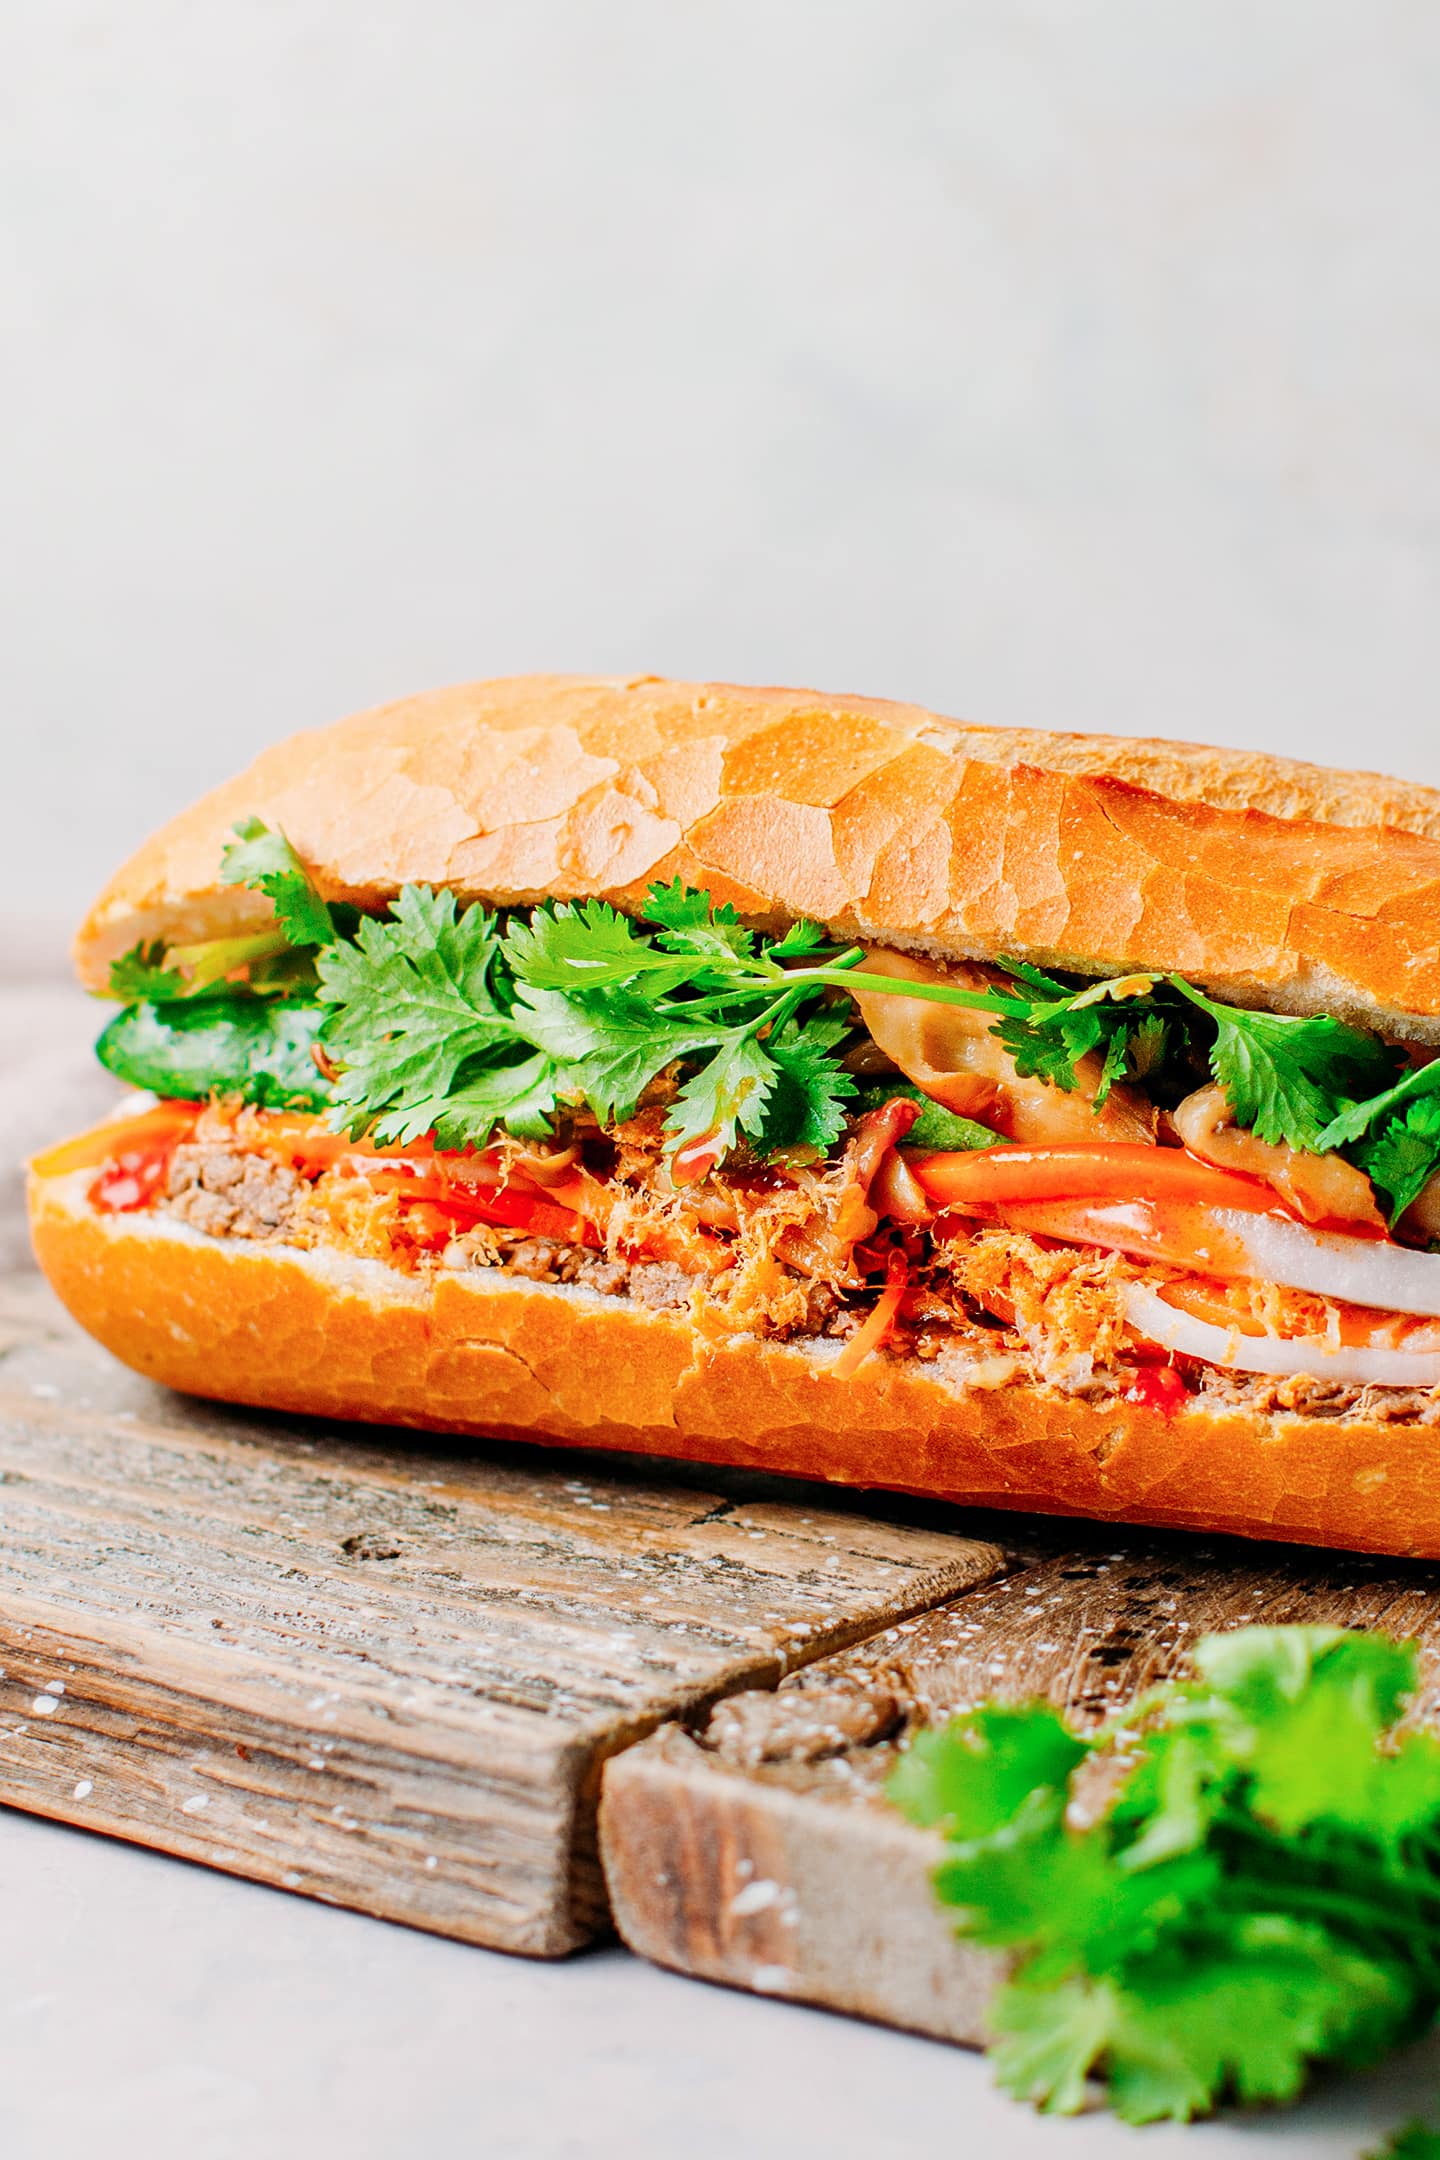 How to Make the Best Vegan Bánh Mì